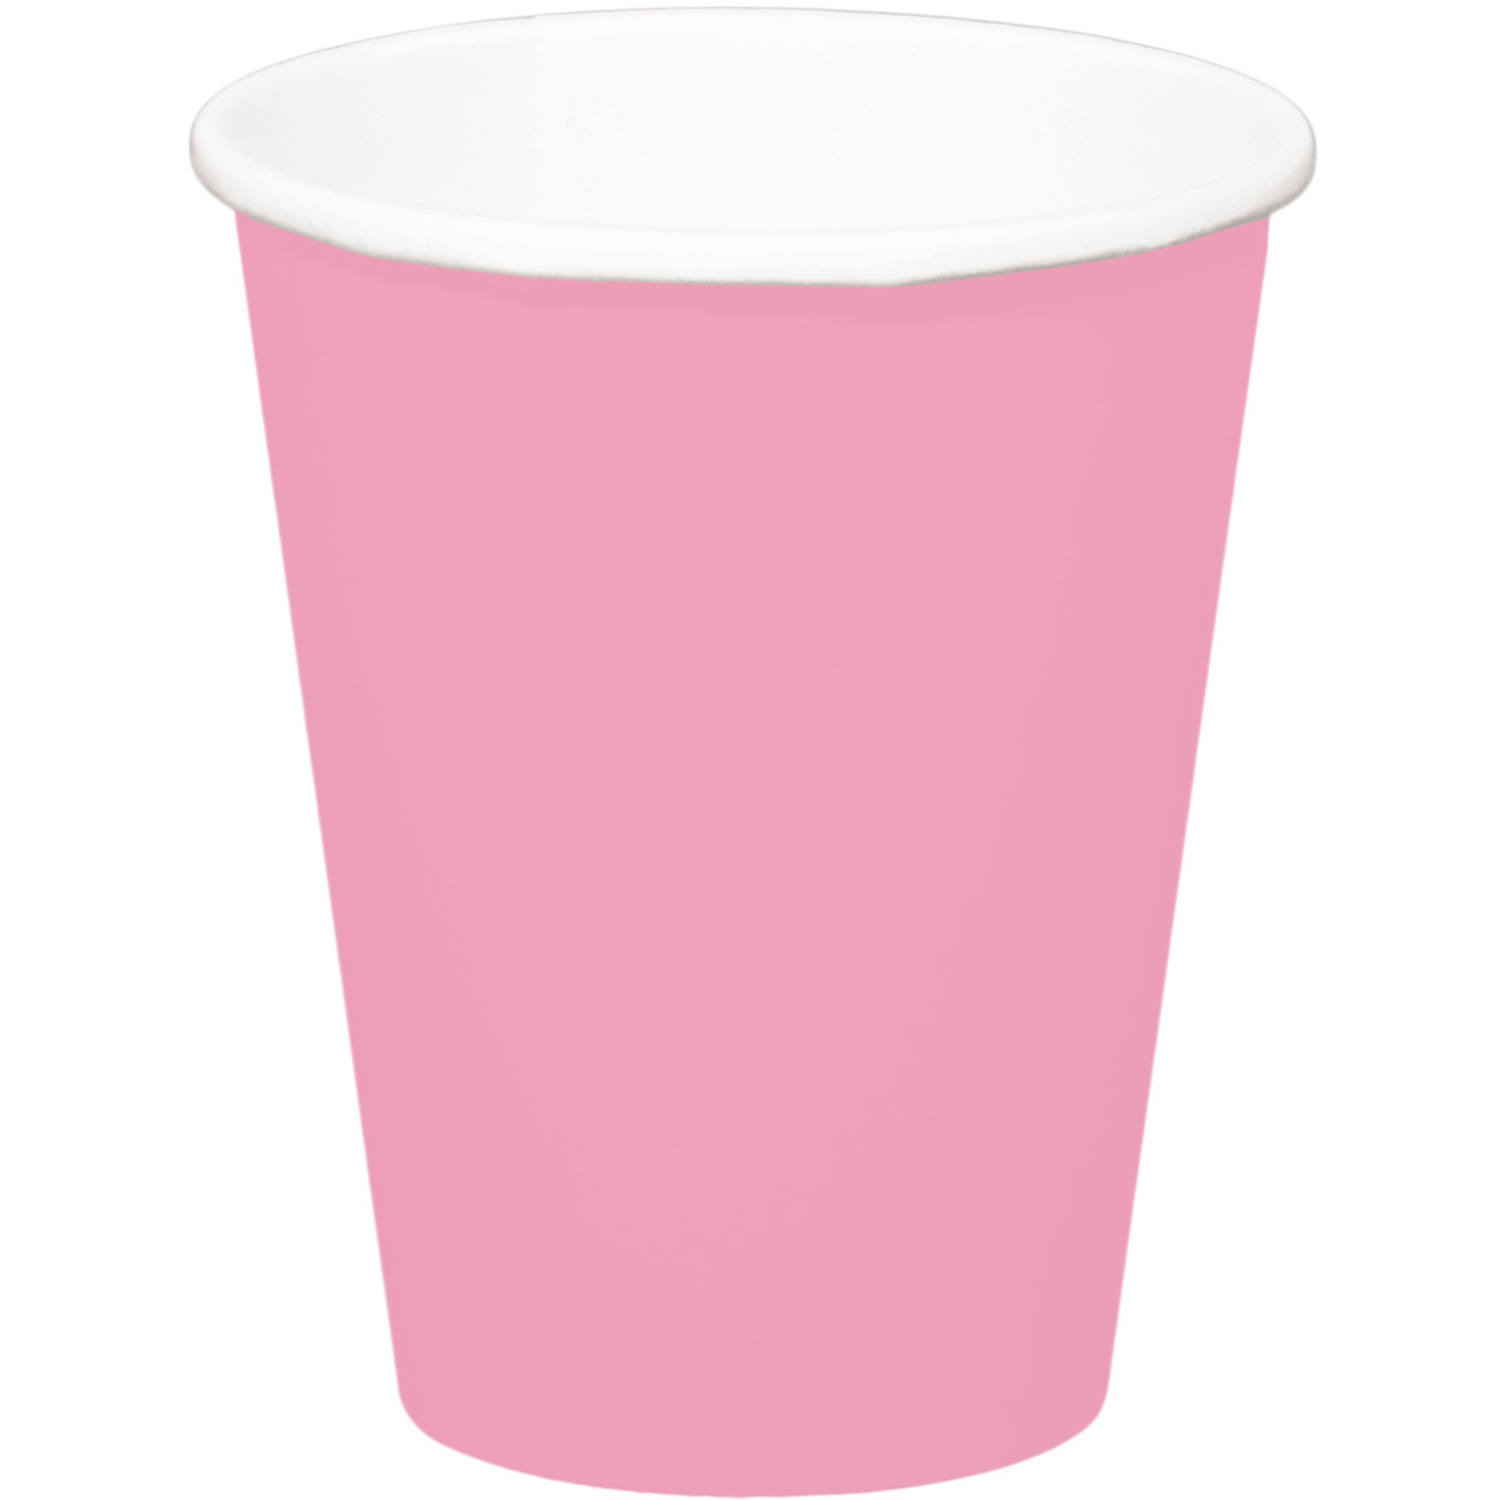 8x stuks drinkbekers van papier roze 350 ml